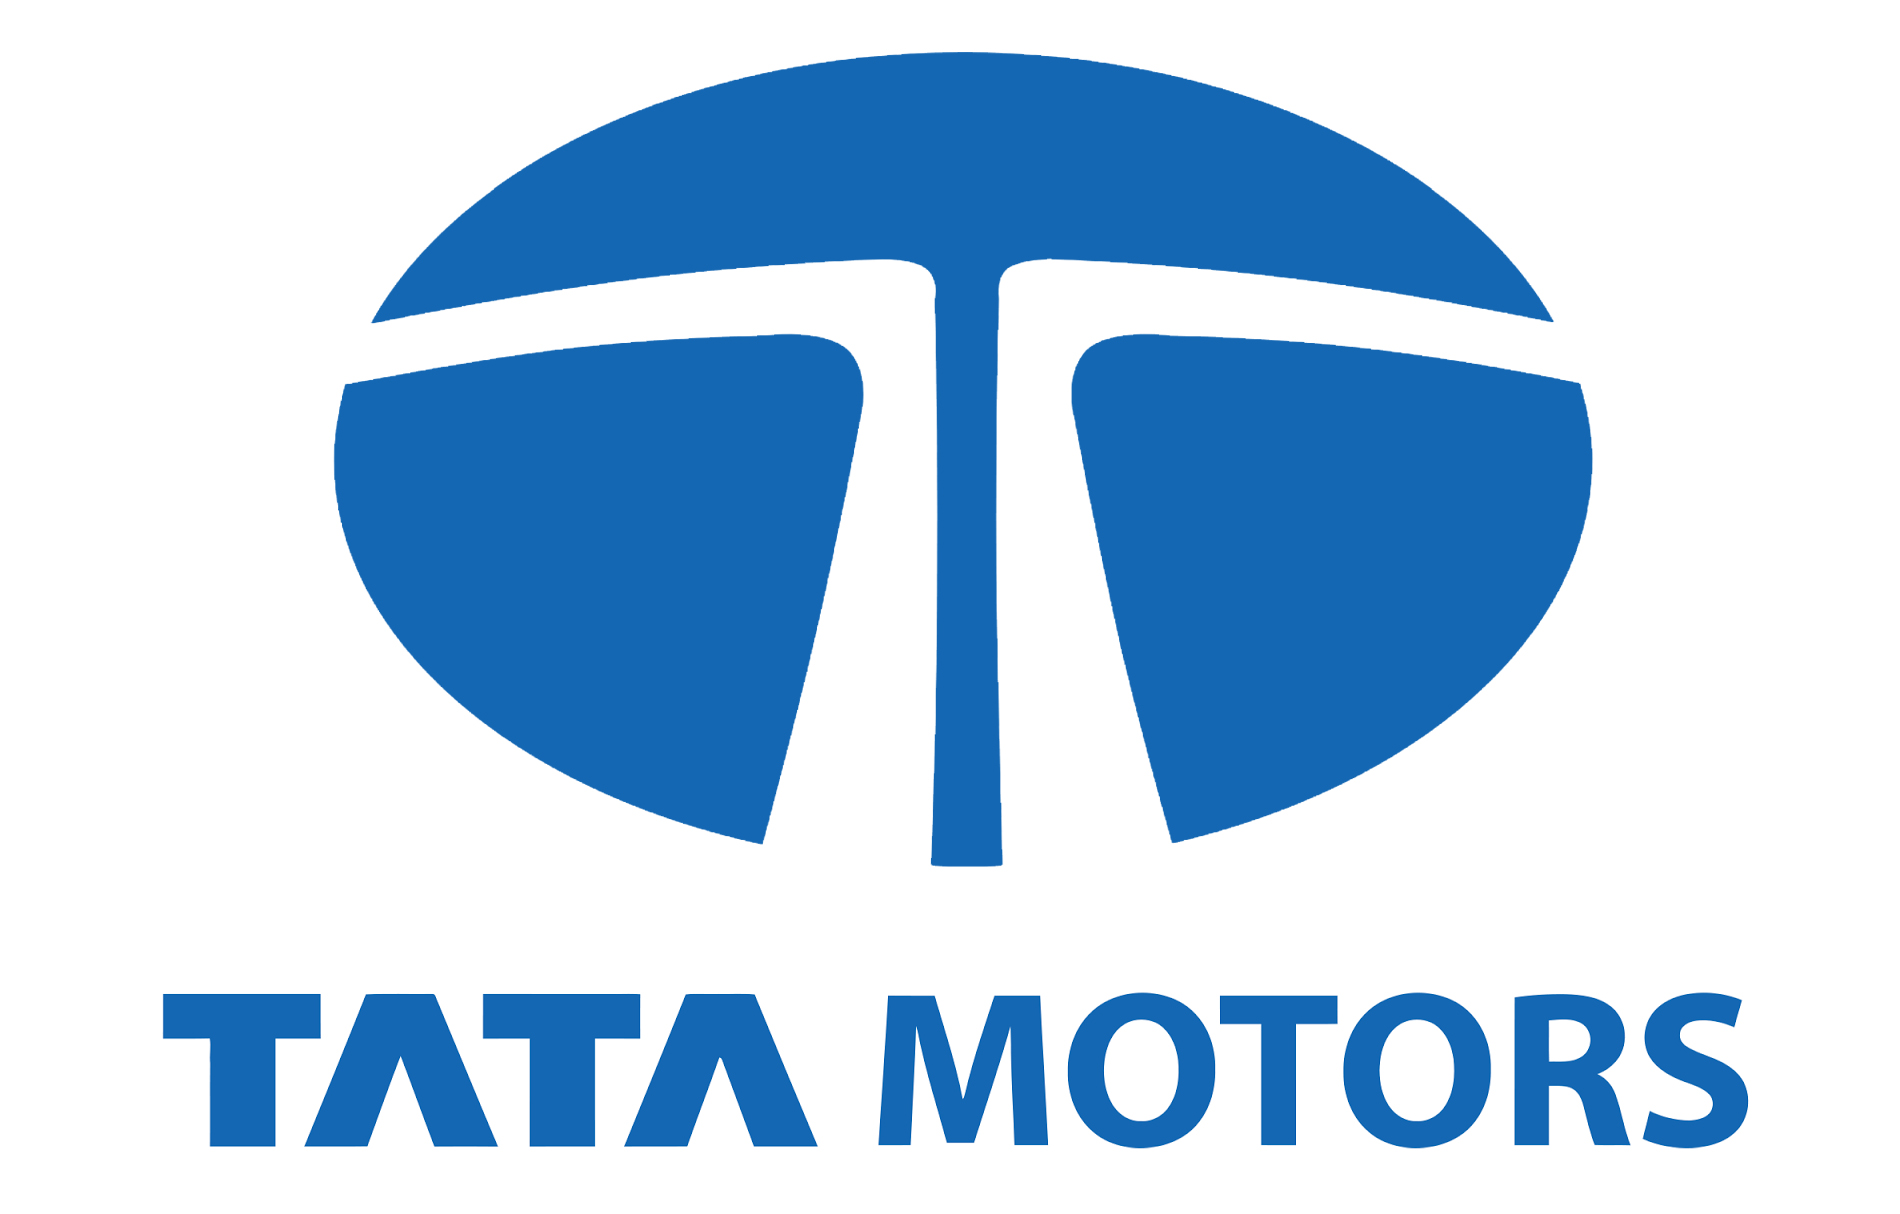 Tata Motors Cars Service Centre - Brijlax Motors|Show Room|Automotive